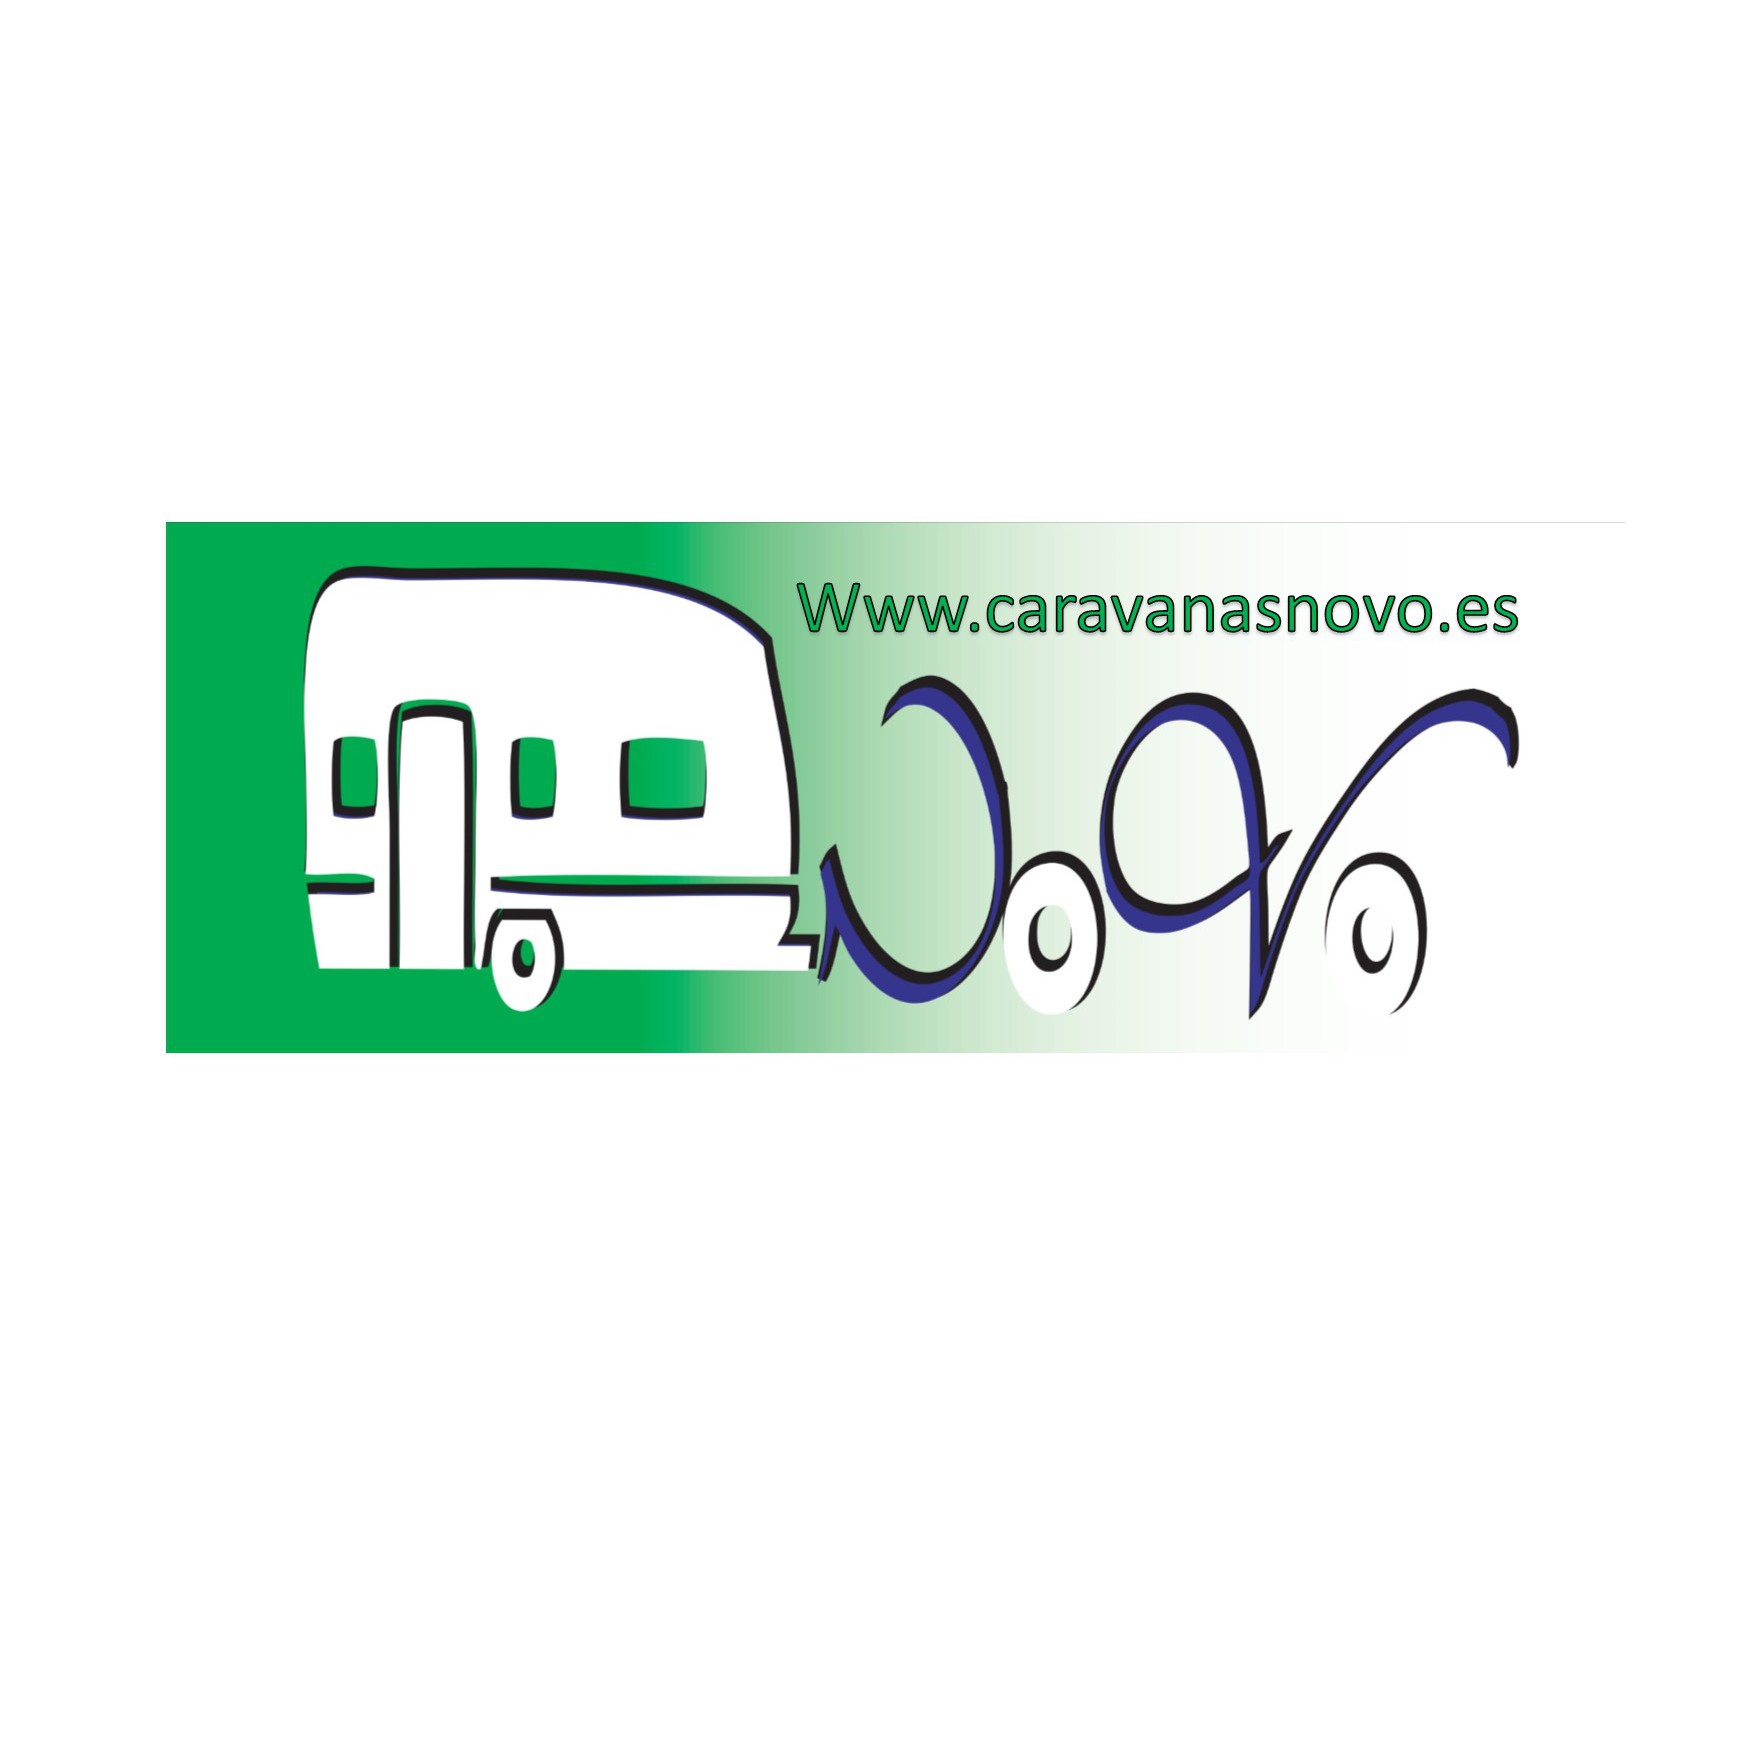 CARAVANAS NOVO - Venta de Mobil Homes - Alquiler y venta de Autocaravanas. Logo